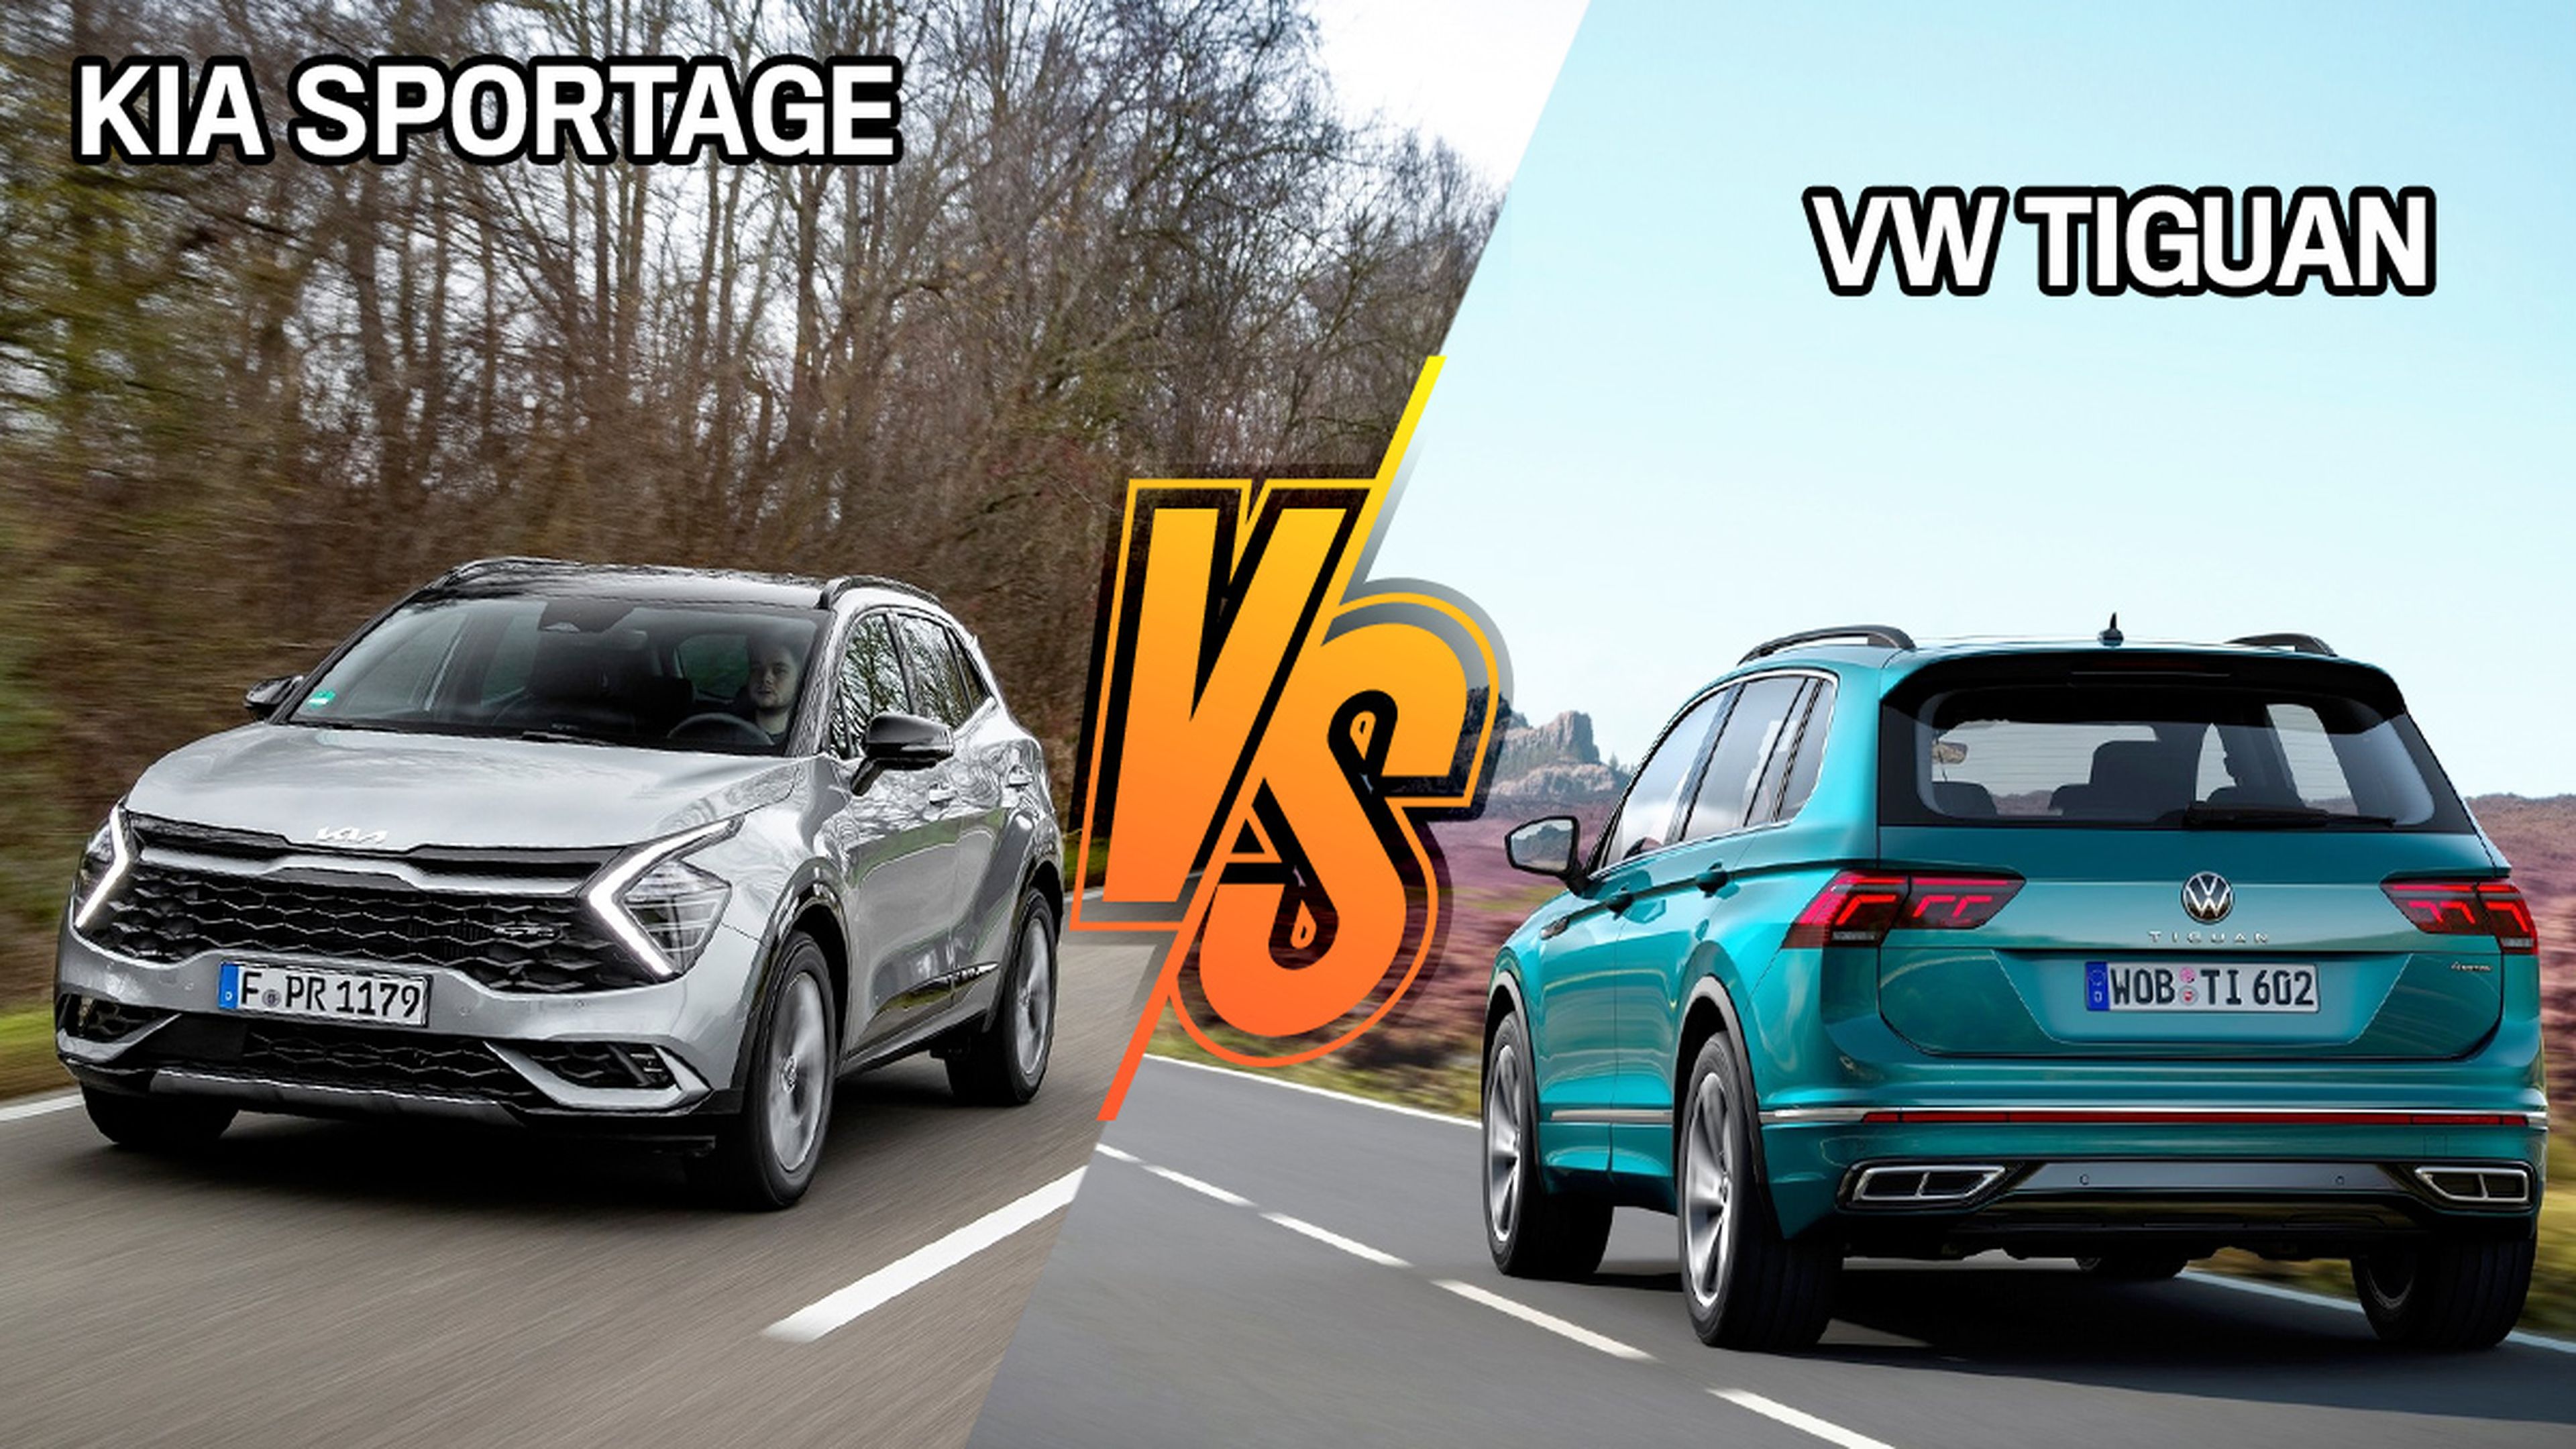 Kia Sportage o VW Tiguan híbrido, elegimos el mejor si estás pensando en su compra